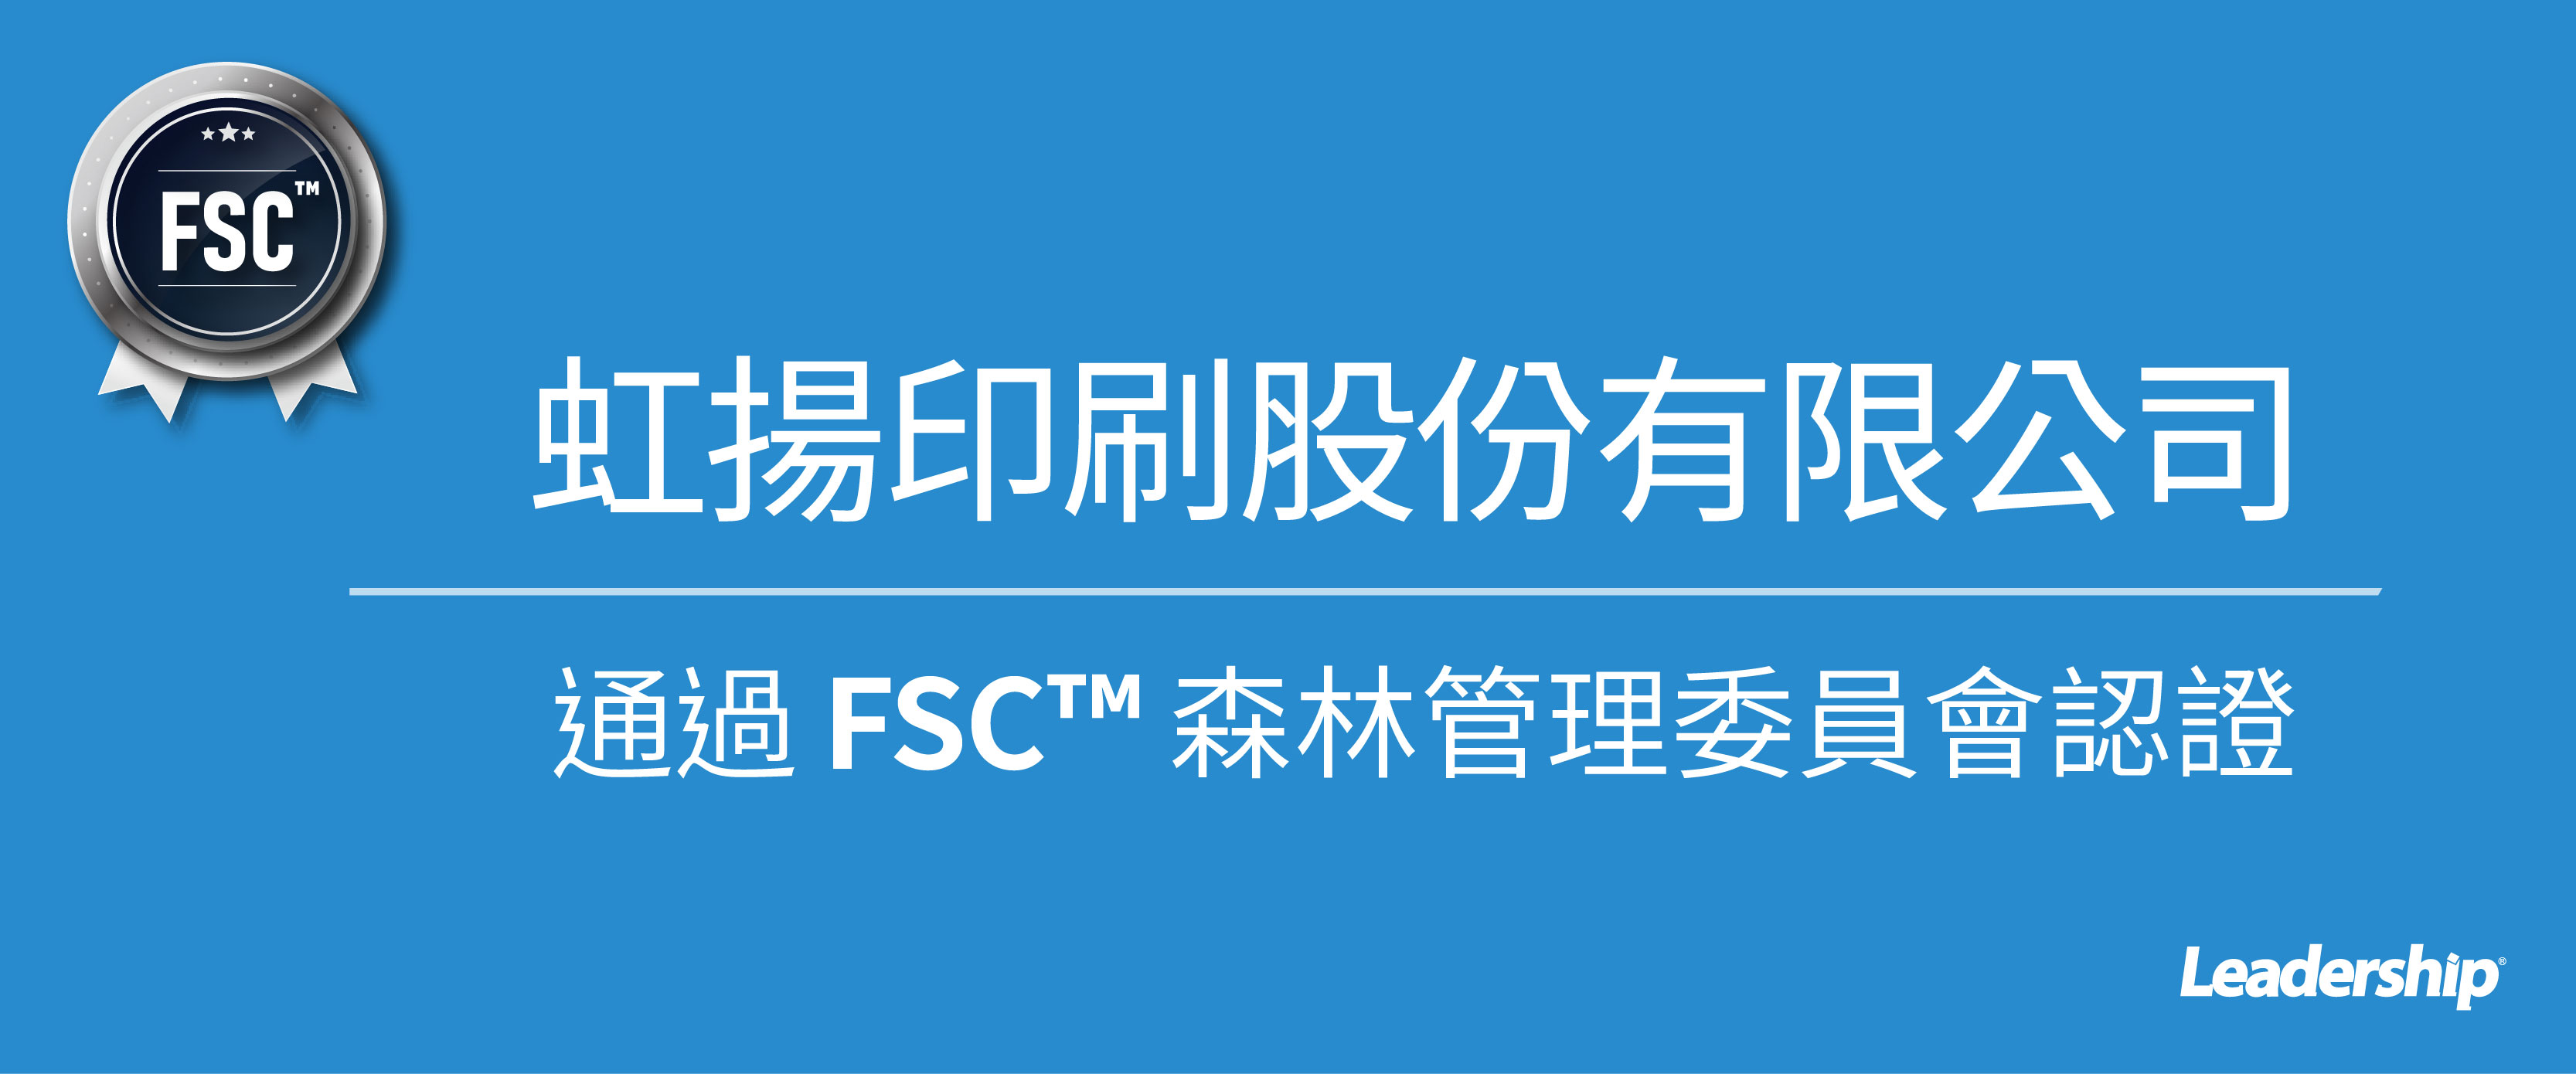 虹揚印刷股份有限公司 恭喜榮獲 FSC™ 認證